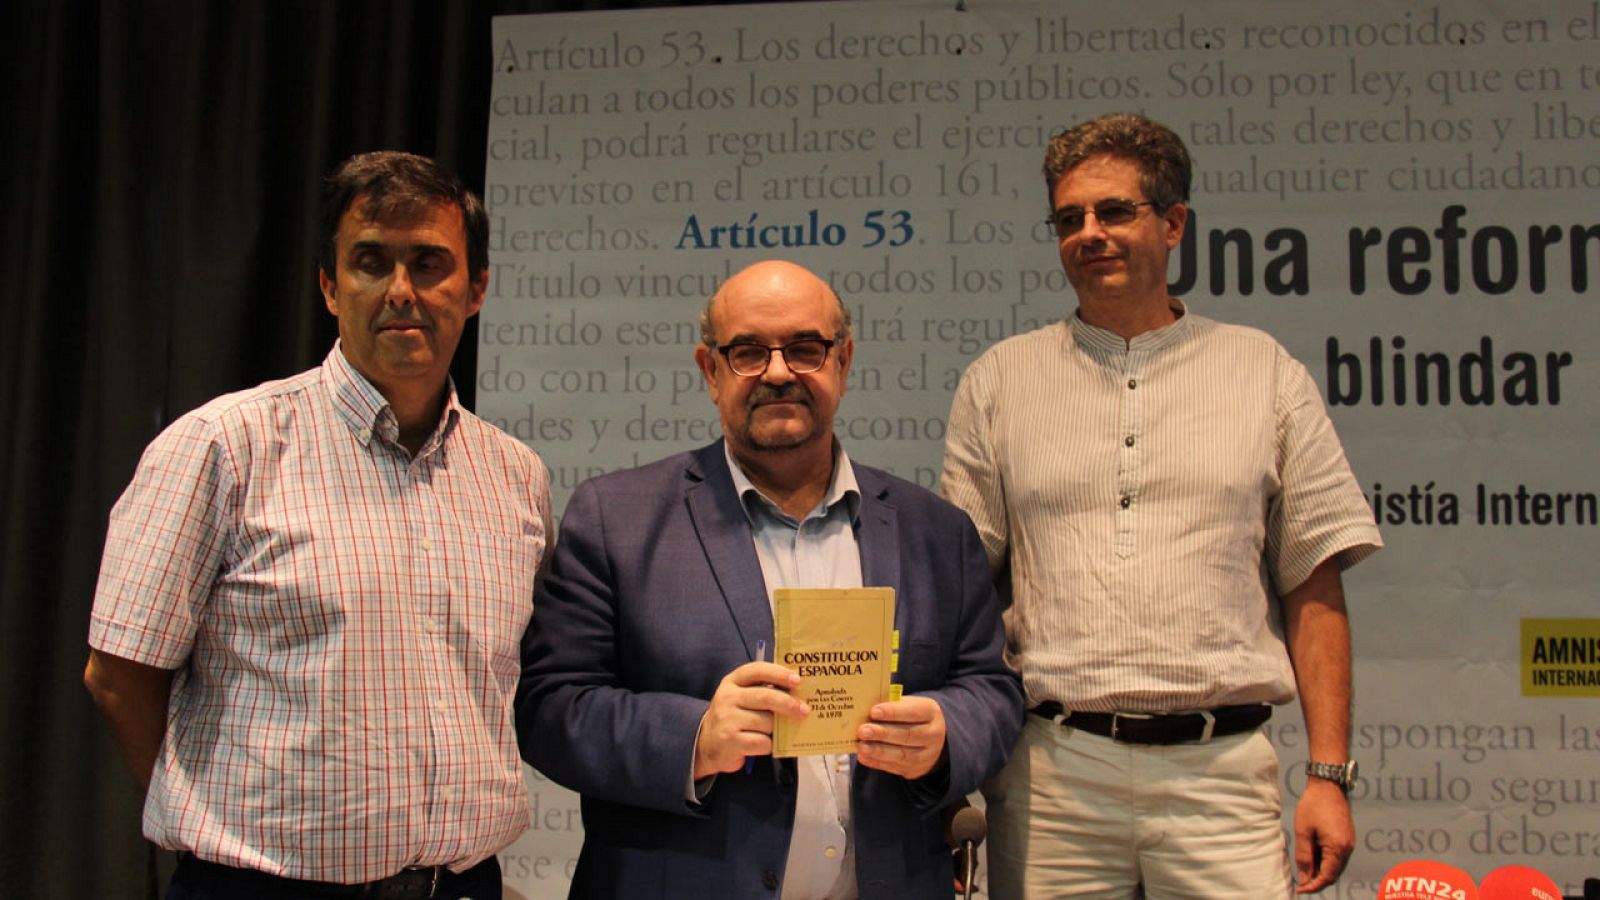 José María Vera, Esteban Beltrán y Mario Rodríguez en la presentación de la campaña "Blinda tus derechos".